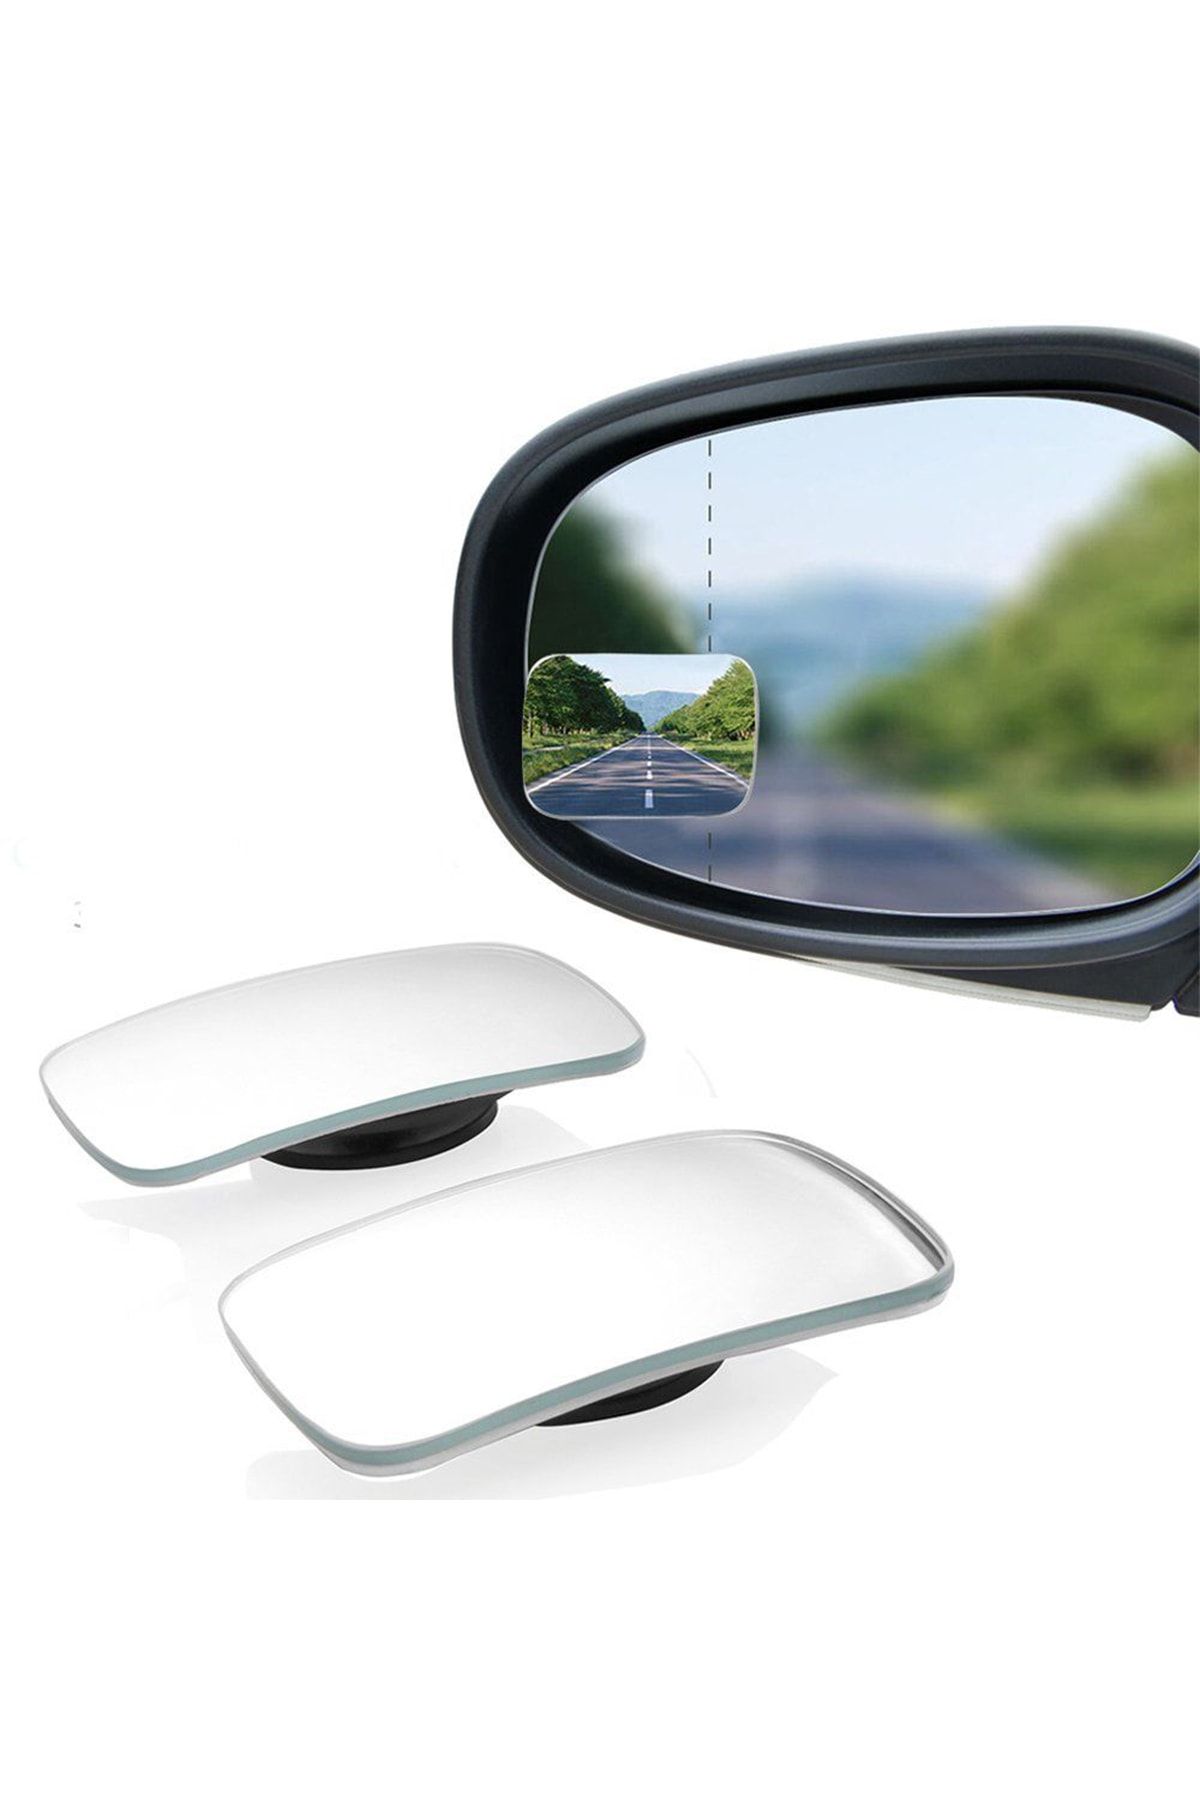 GD 24 Oto Kör Nokta Aynası Gerçek Ayna 70mm X40 Mm Oynar 2 Adet Yüksek Kalite Ve Şık Tasarım Qe